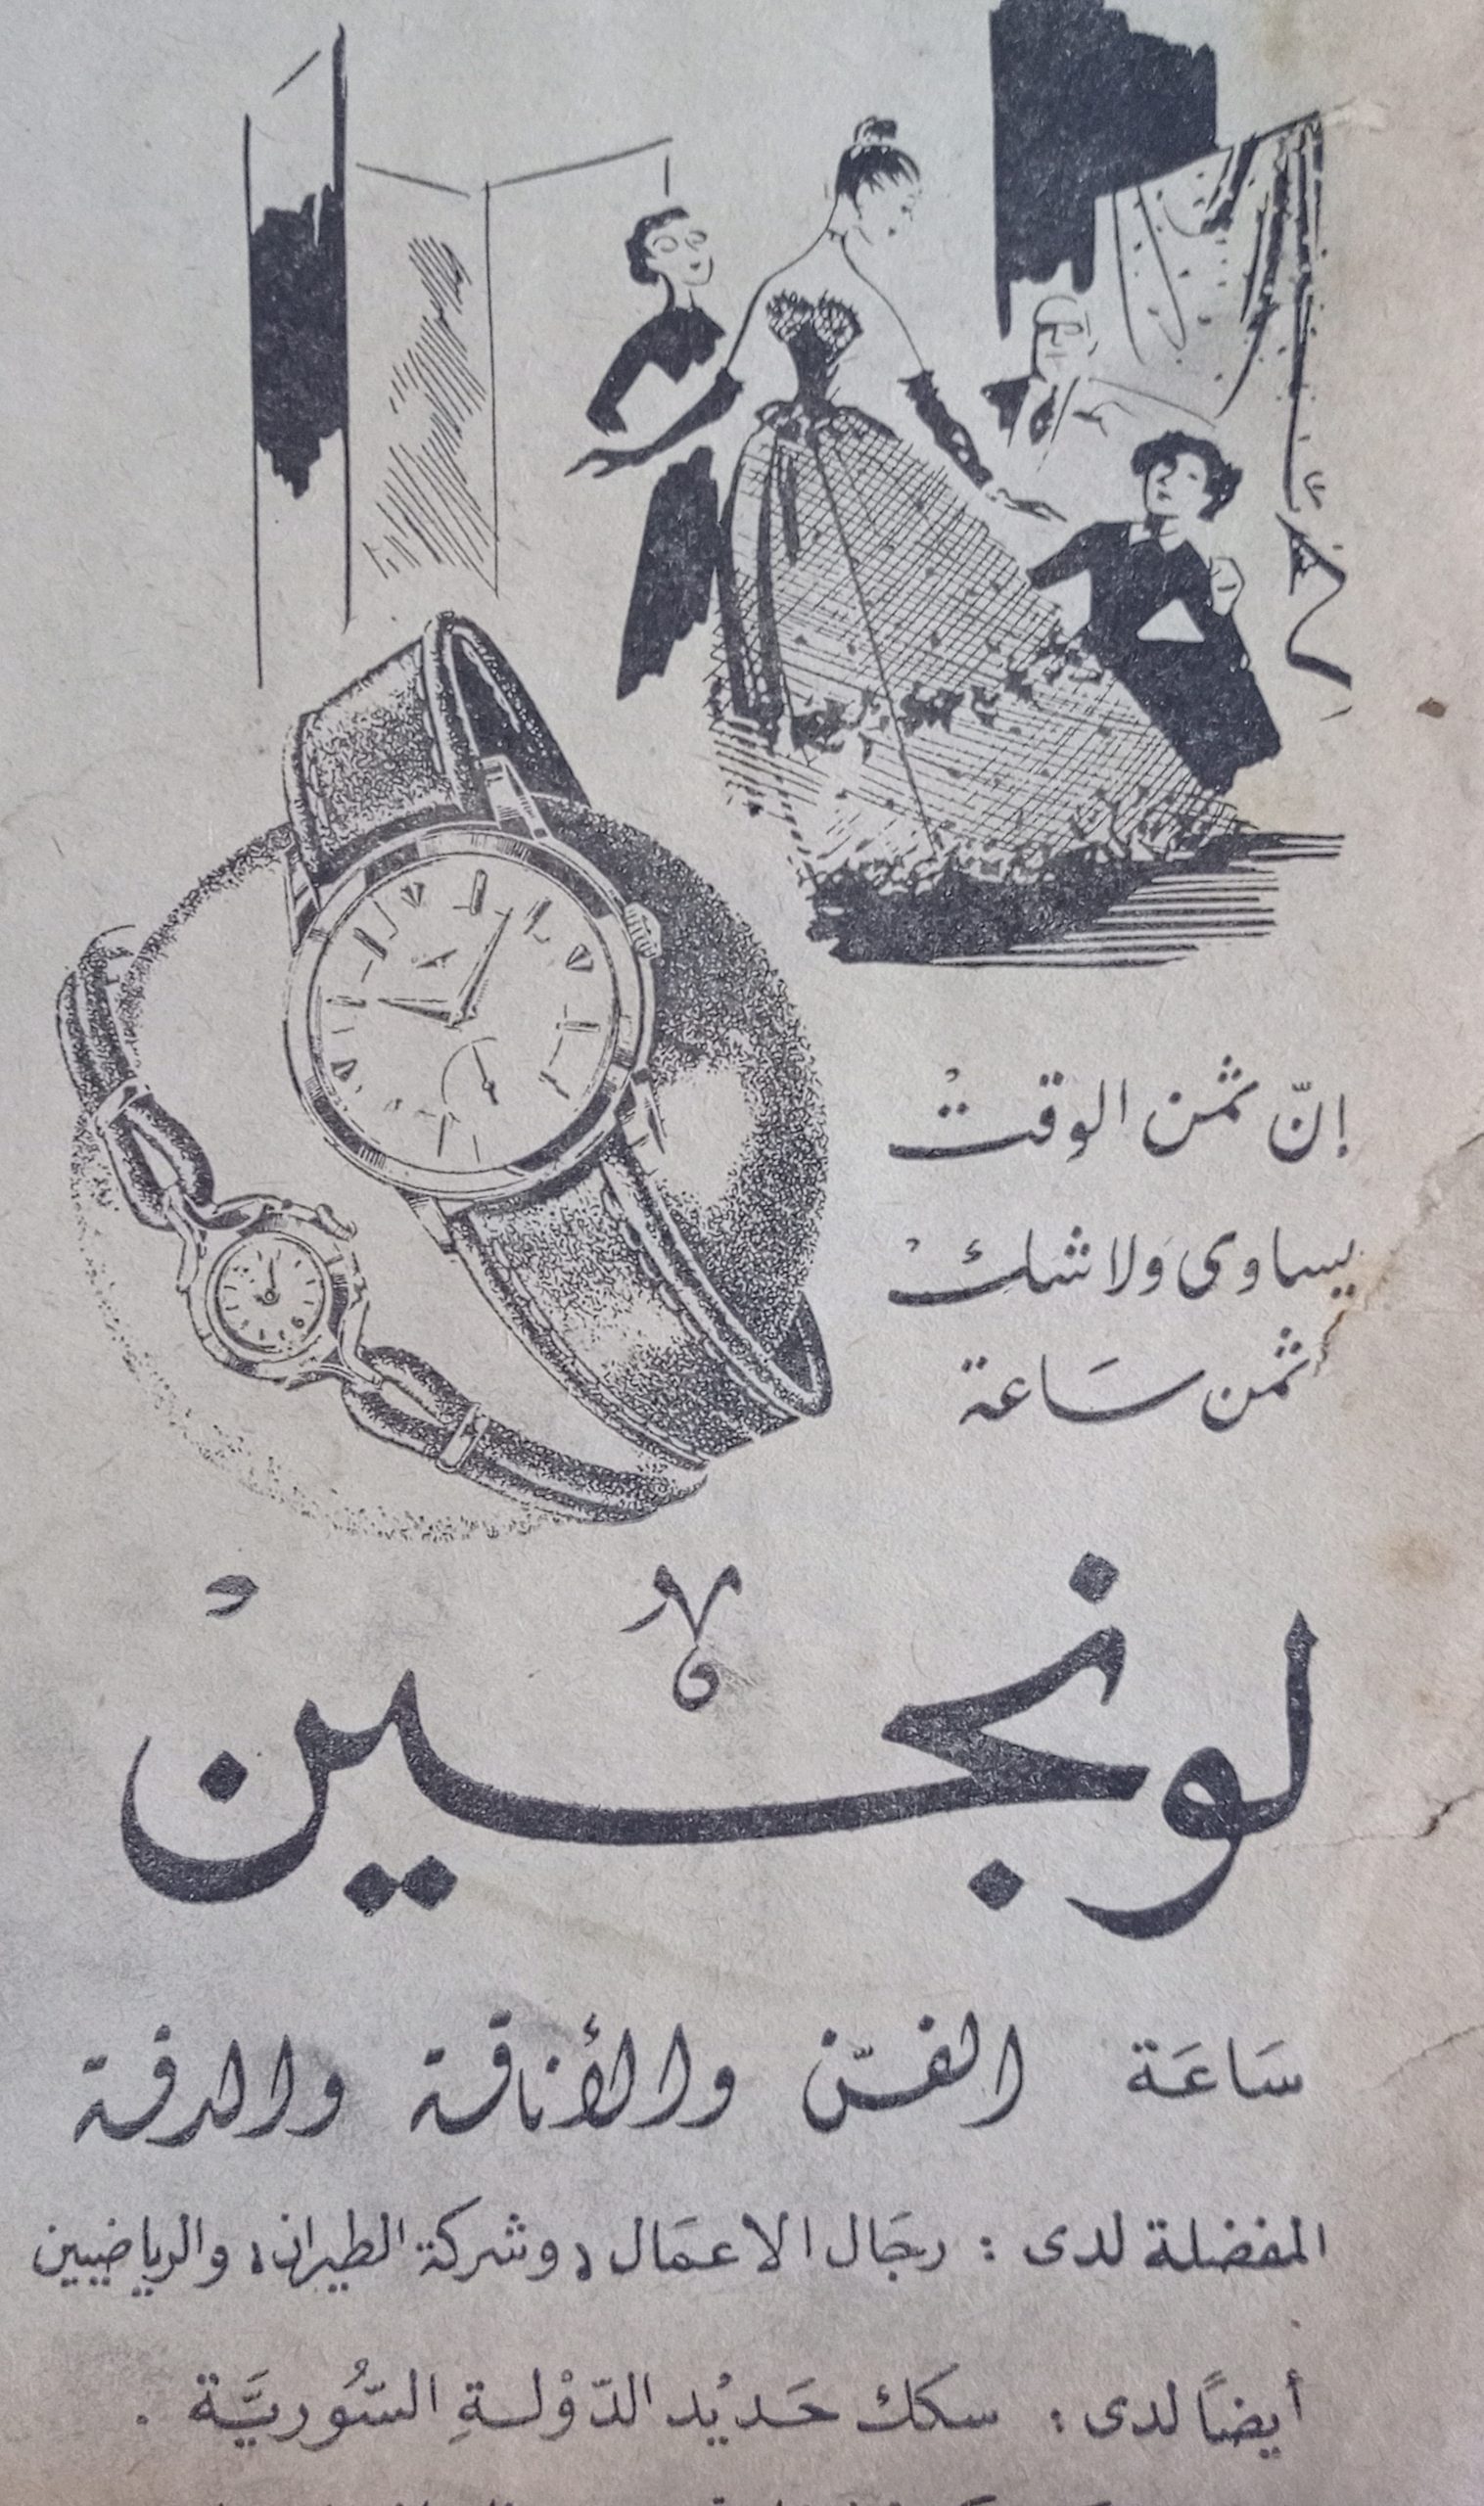 التاريخ السوري المعاصر - إعلان لساعة لونجين عام 1956